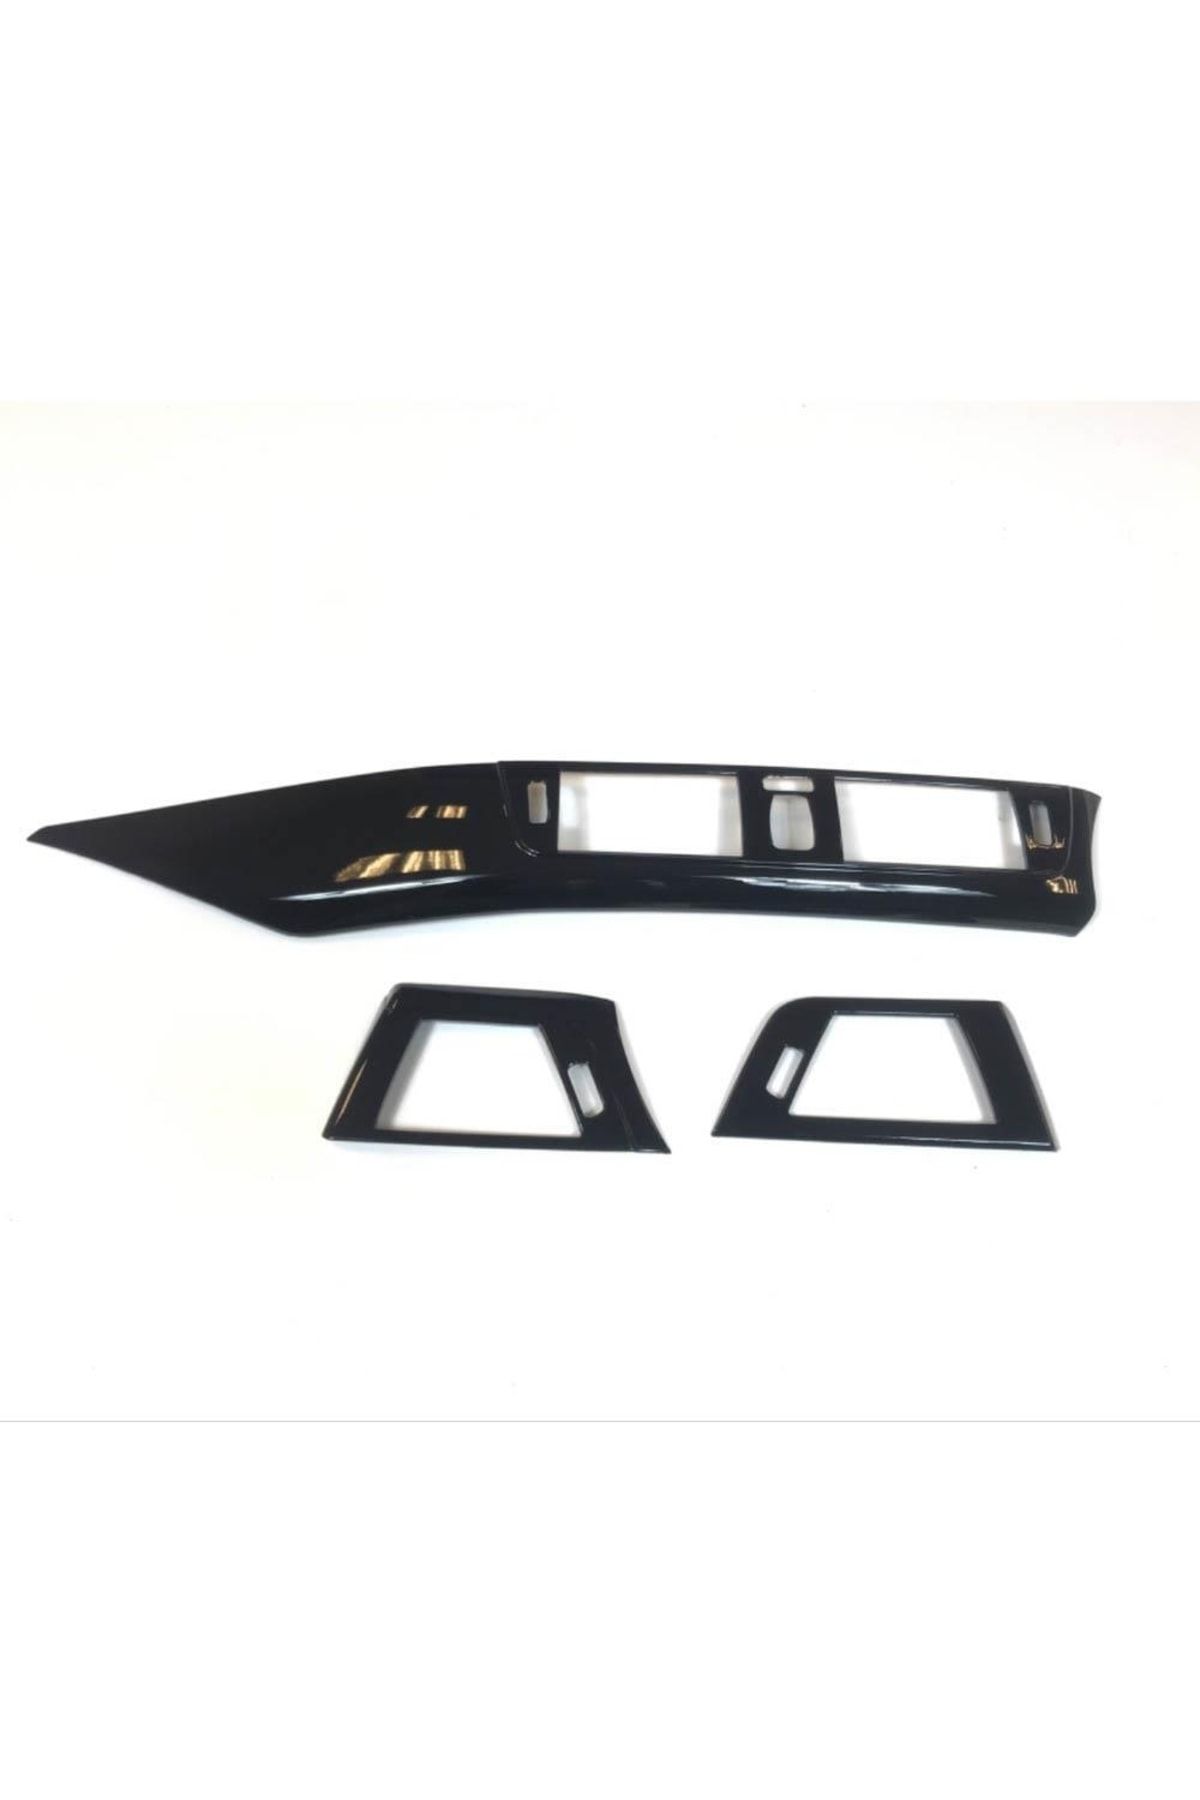 OLED GARAJ Bmw 3 Serisi F30 Için Uyumlu Göğüslük Ve Menfez Kaplama Seti Piano Black